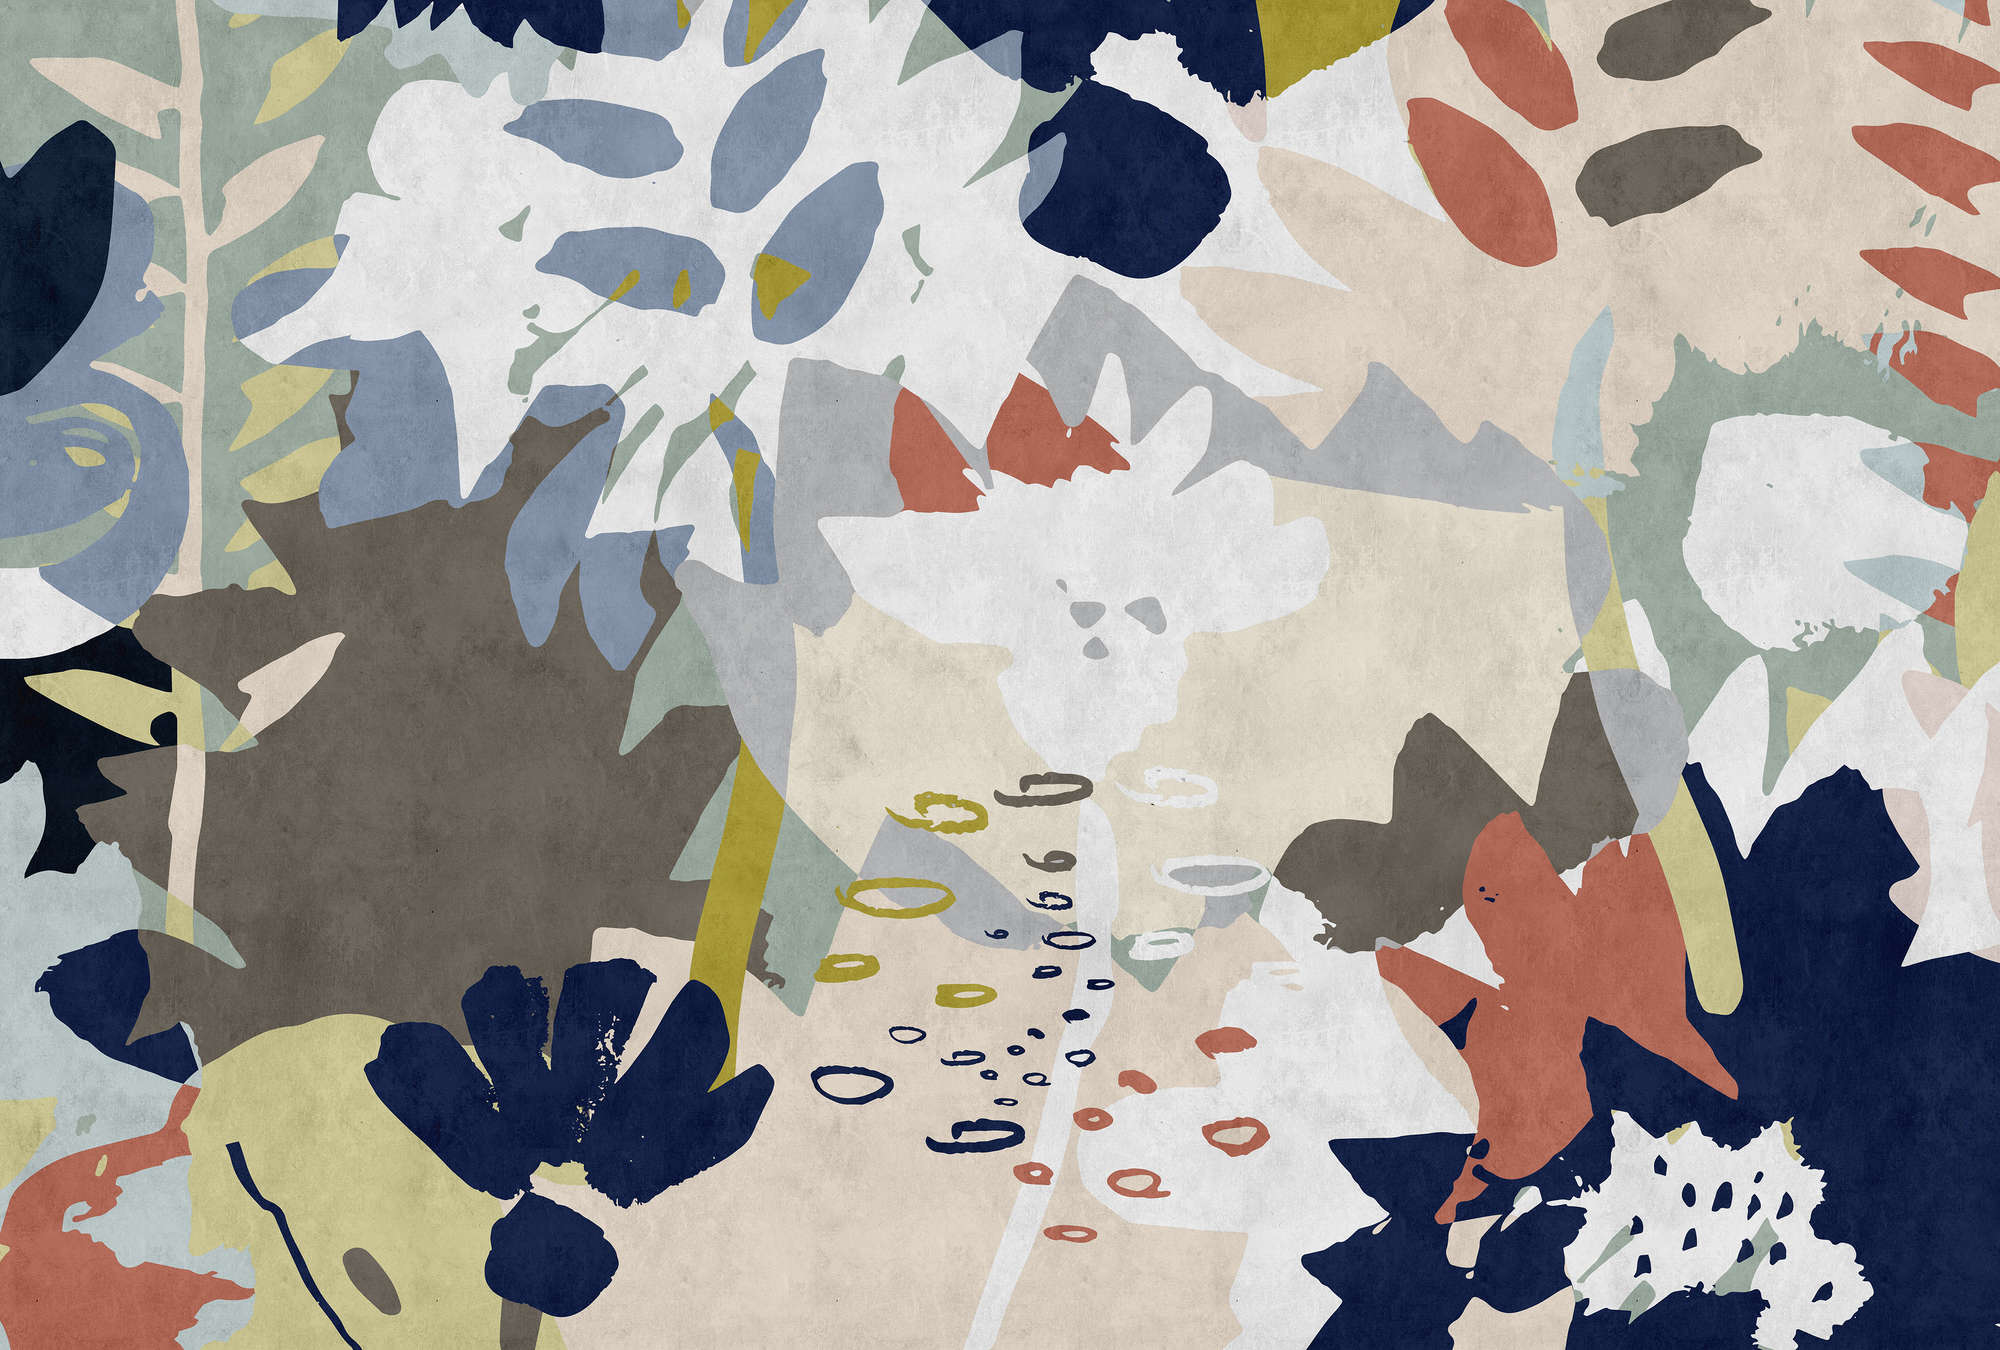             Floral Collage 4 - Fototapete mit buntem Blattmotiv - Löschpapier Struktur – Blau, Braun | Mattes Glattvlies
        